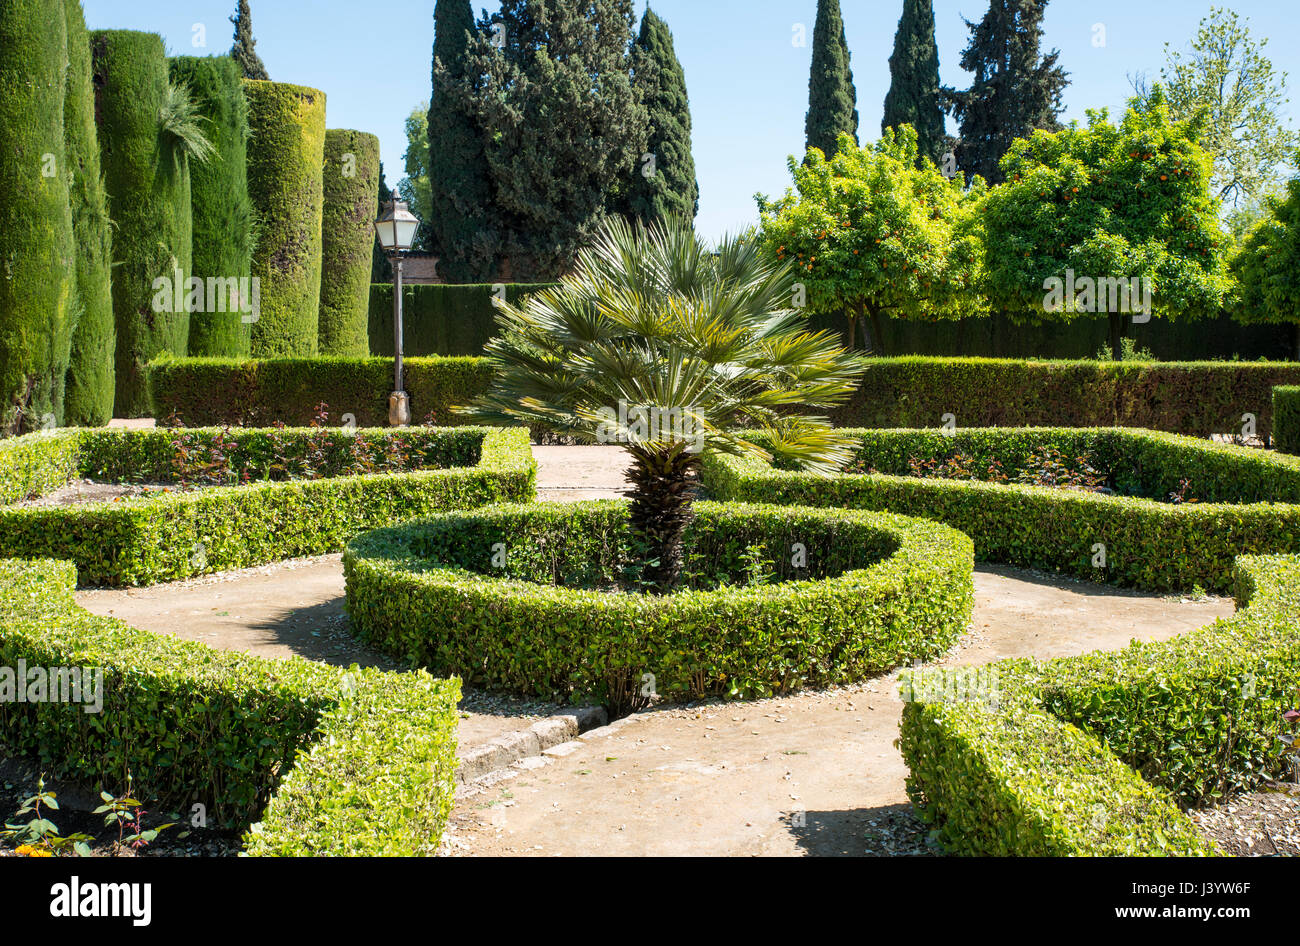 Schöner Garten mit Buxus und eine Palme in der Mitte Stockfoto